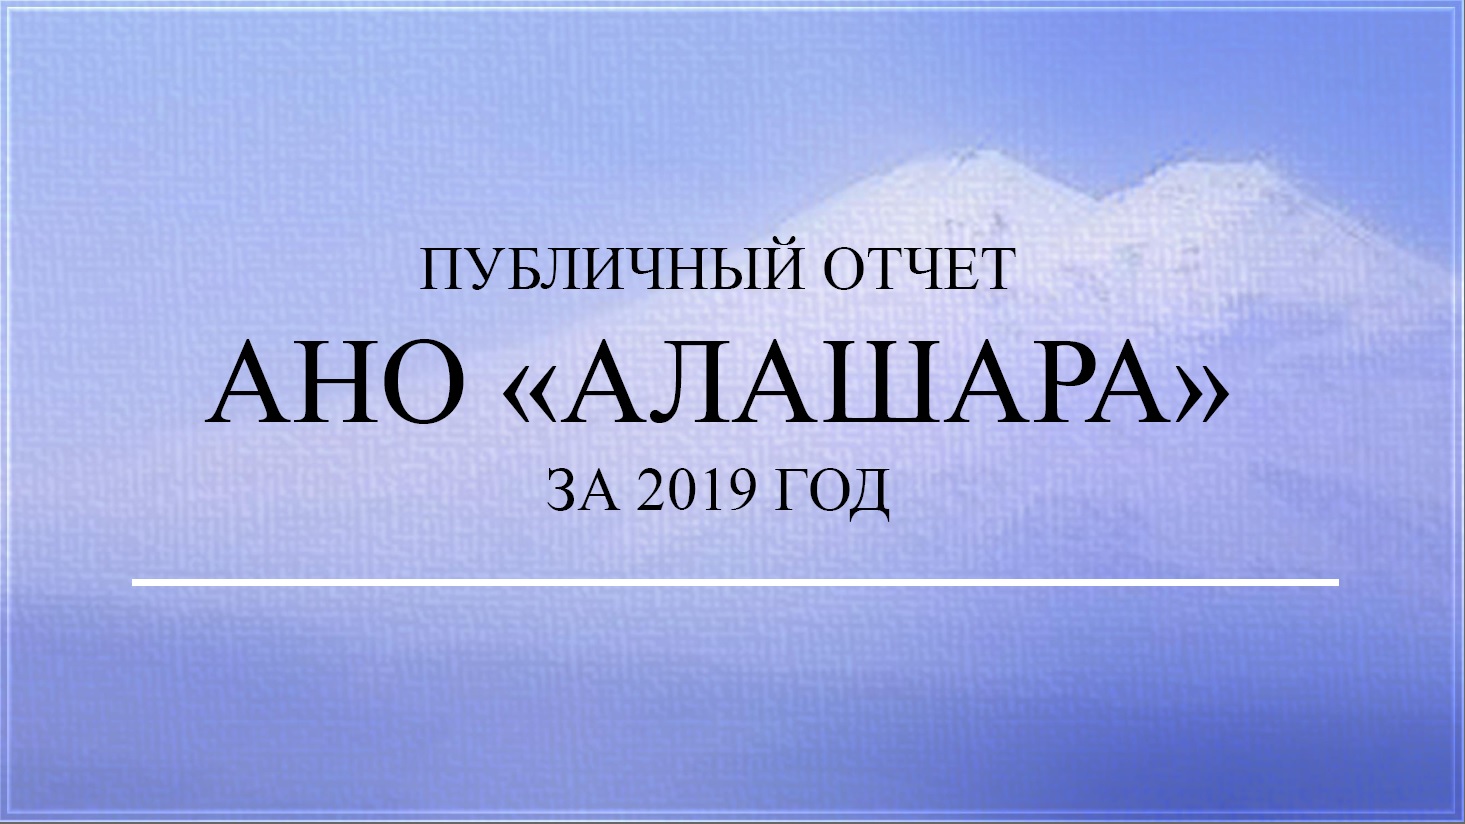 Публичный отчет АНО "Алашара" за 2019 год